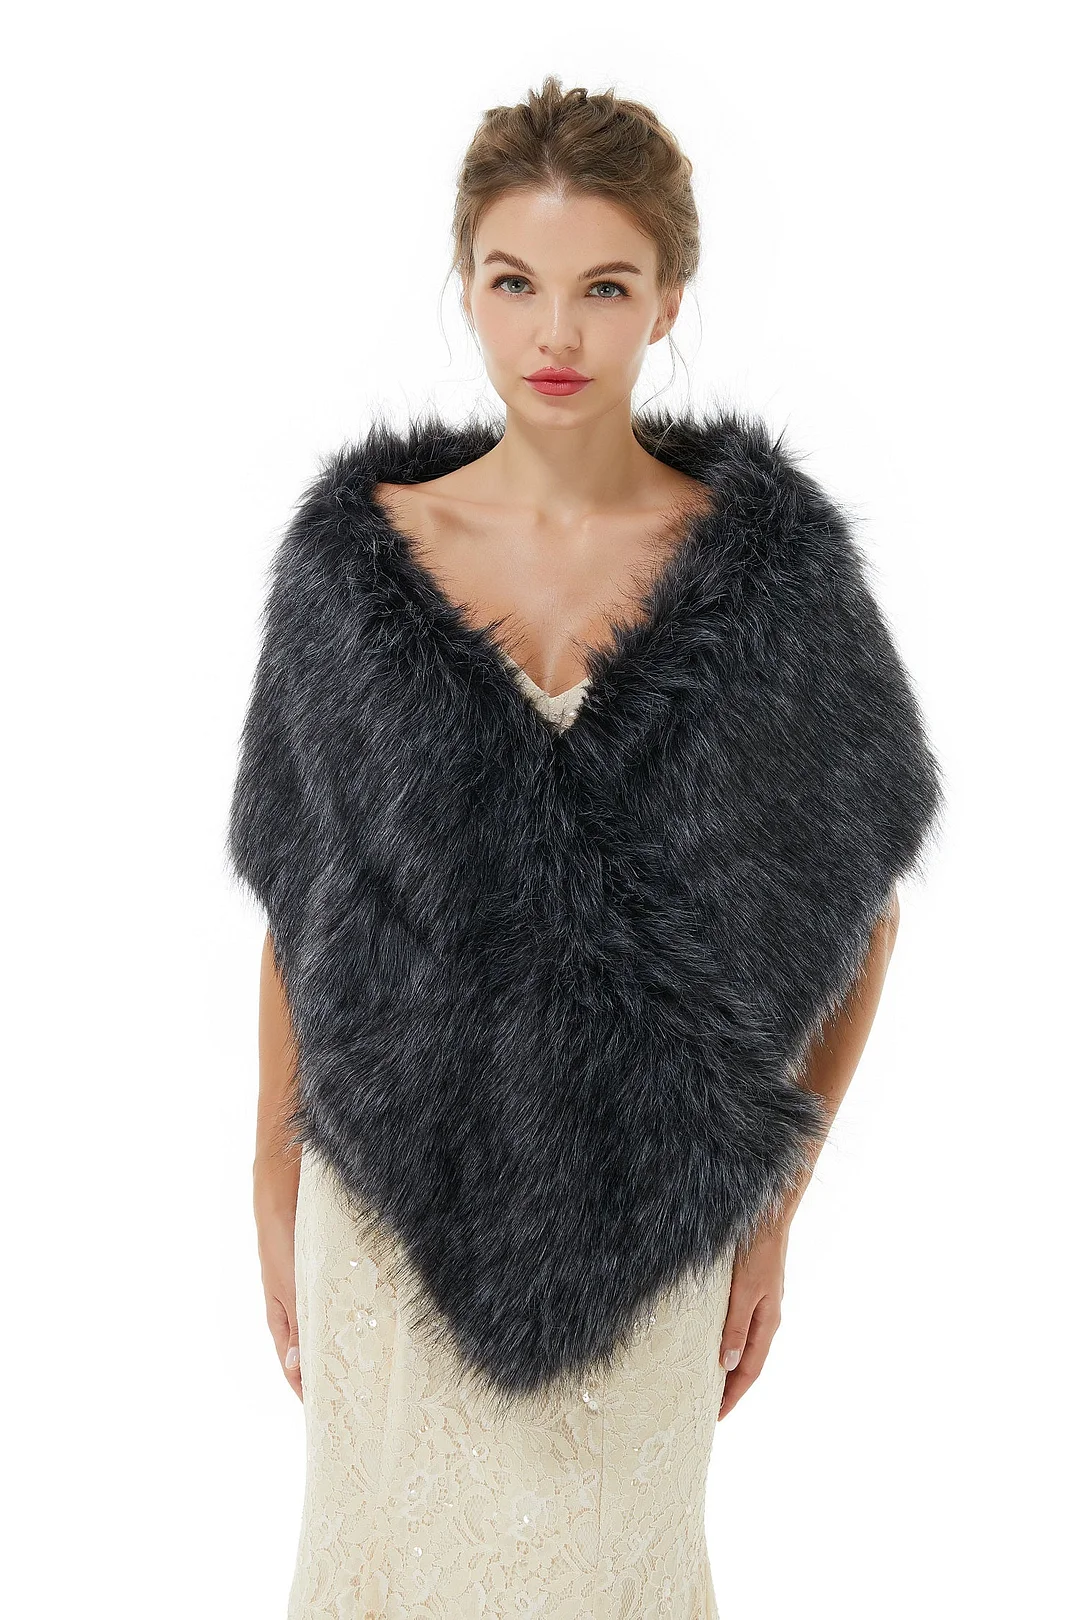 Bellasprom Fashion Black Faux Fur Shawl Online Winter Wedding Wrap